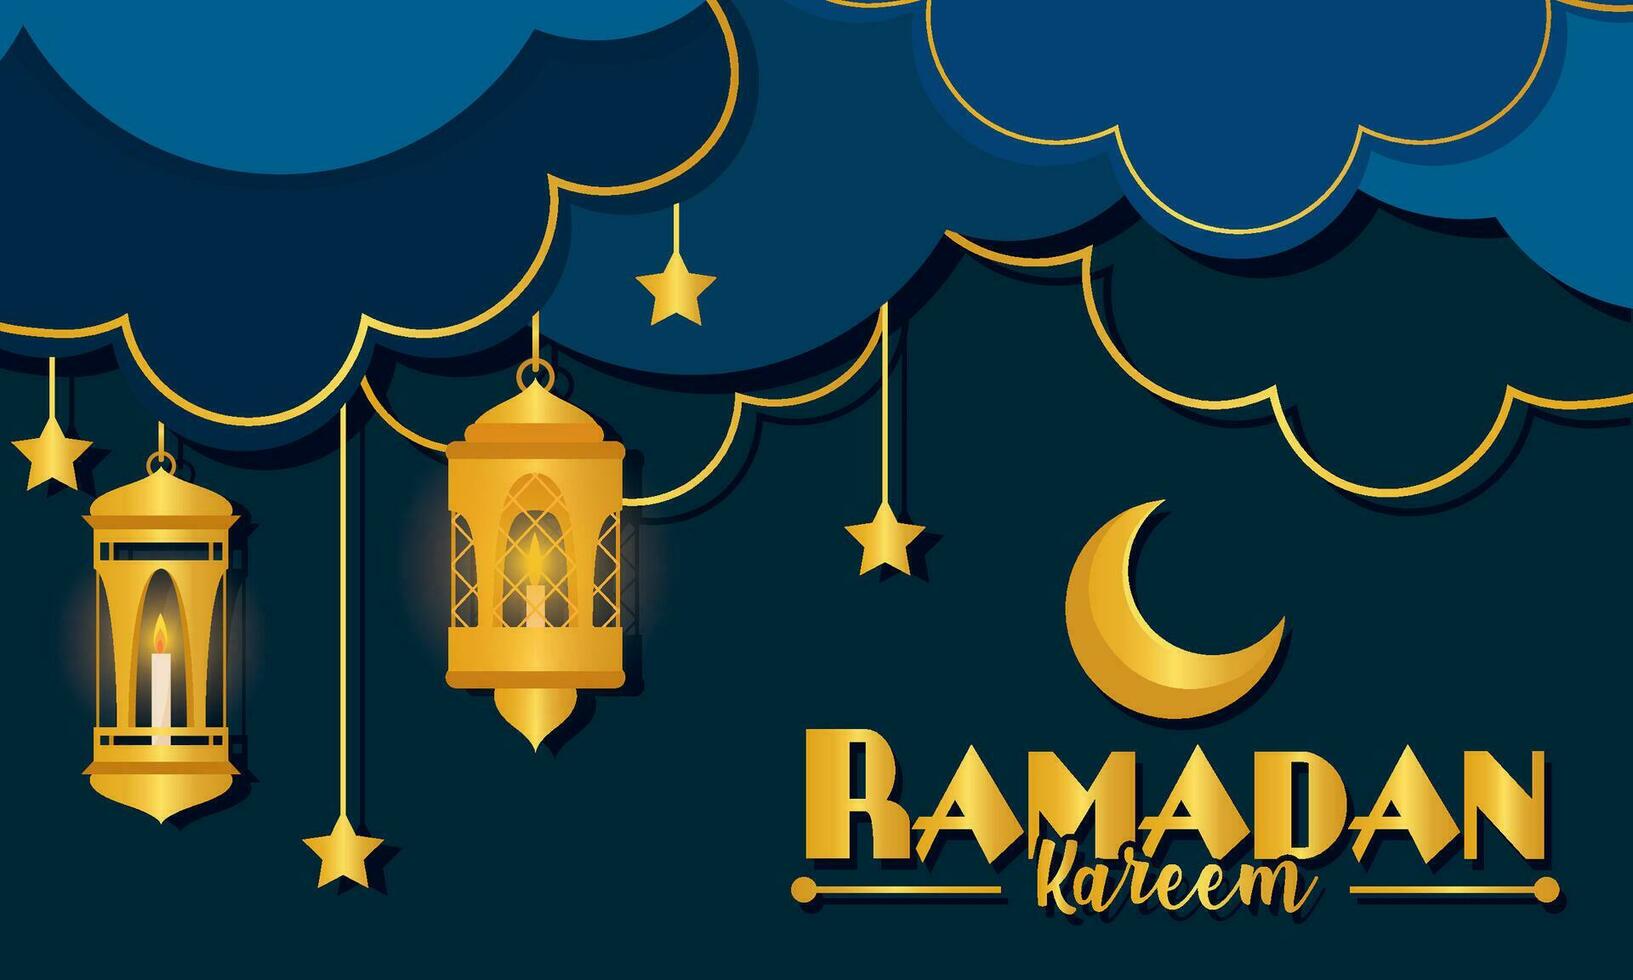 wolken met gouden maan en gouden Arabisch lantaarns Ramadan kareem vector